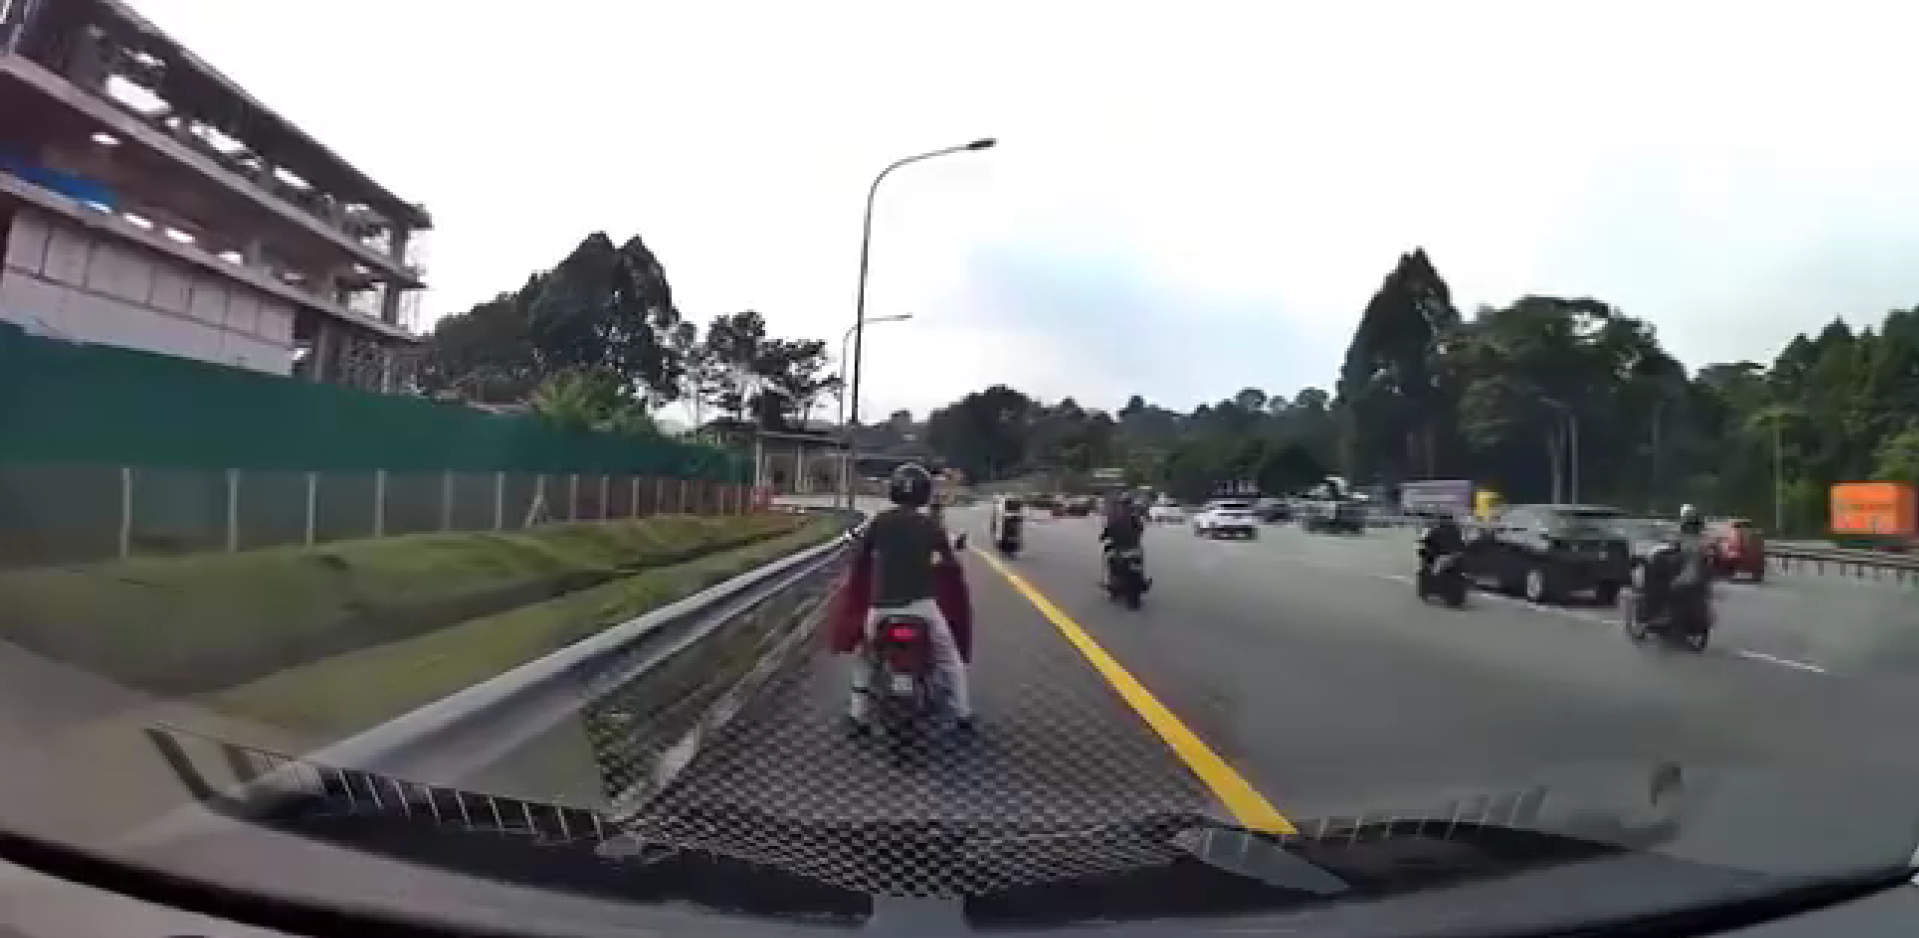 Man pushing his motorbike on road